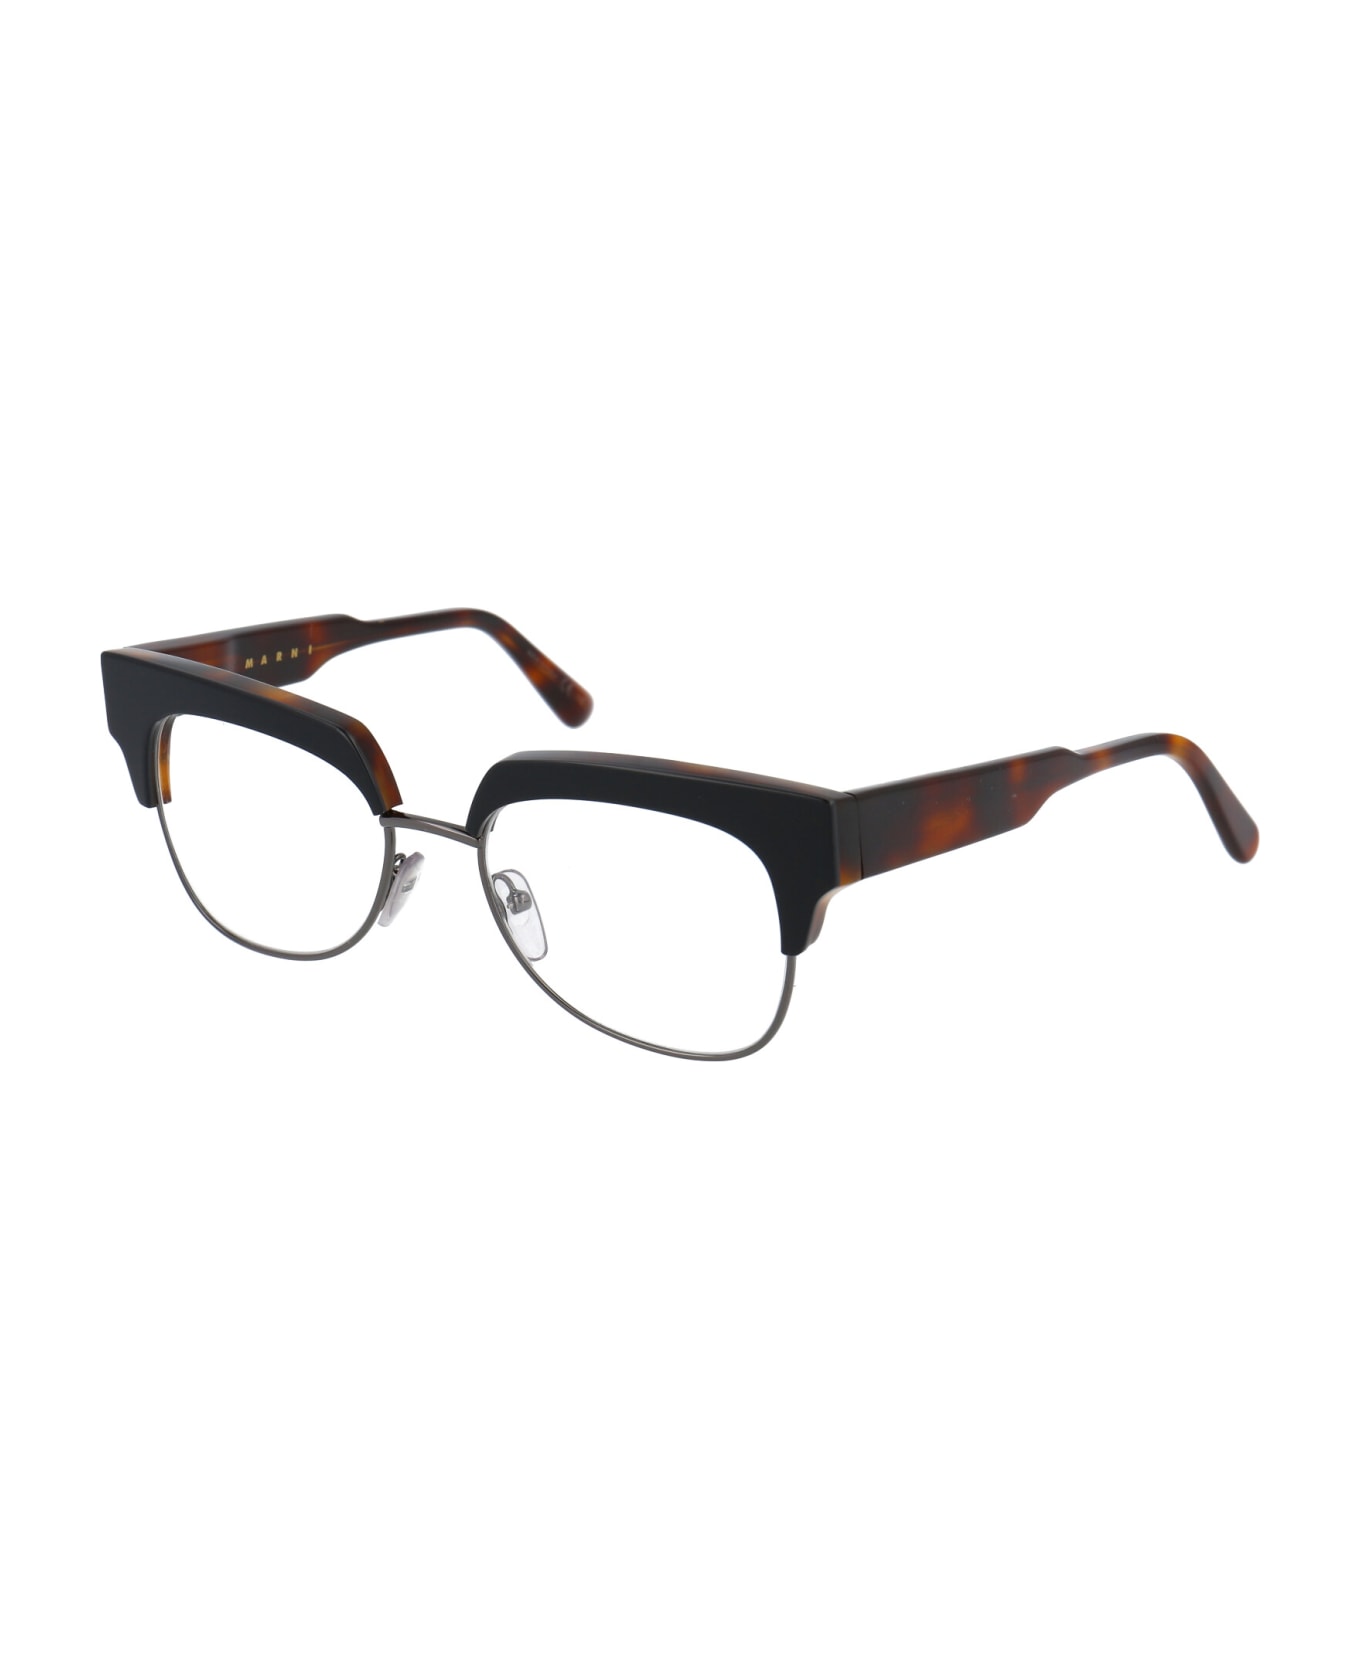 Marni Eyewear Me2601 Glasses - 004 BLACK HAVANA アイウェア